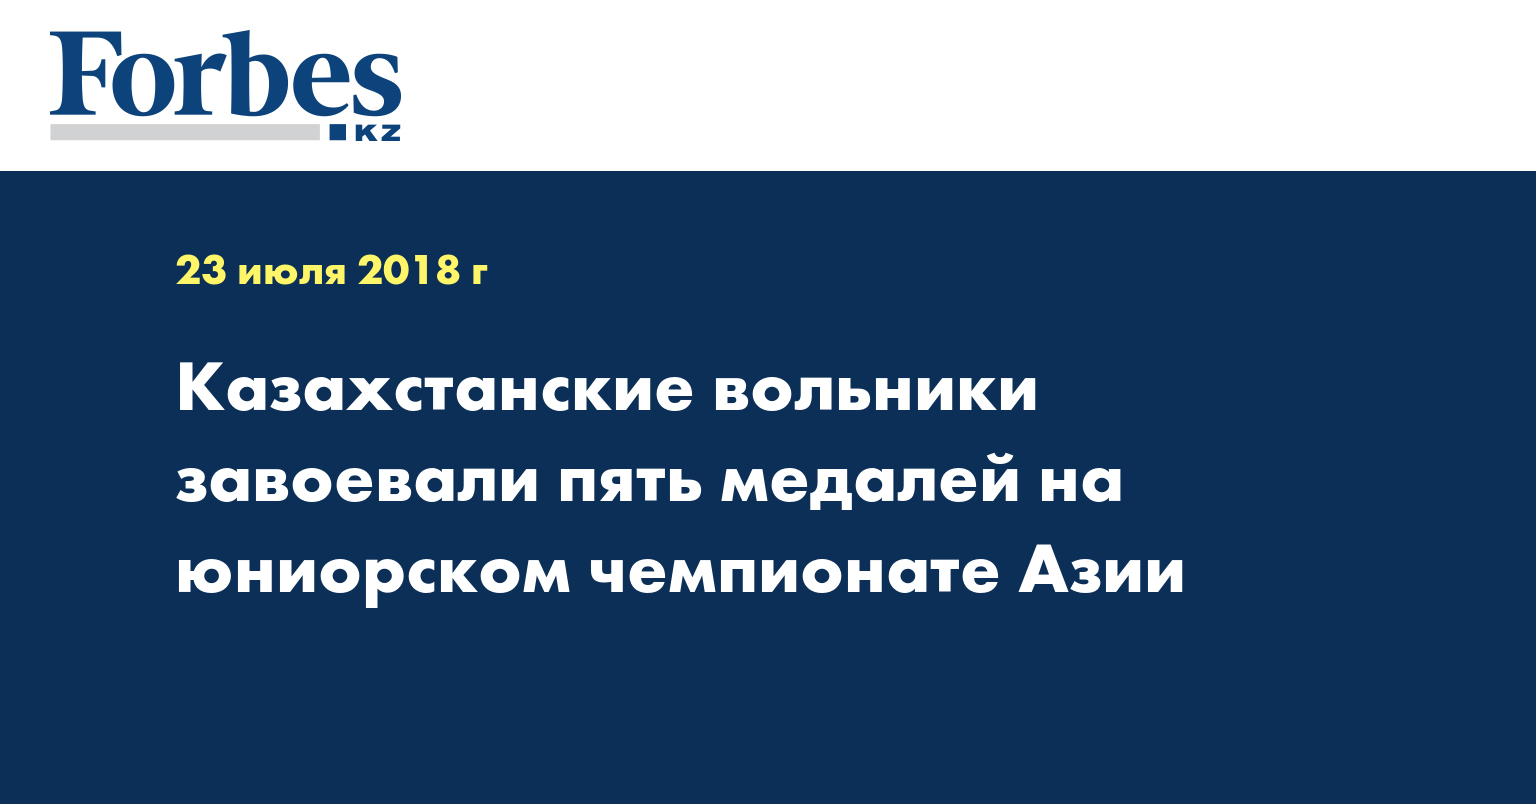 Казахстанские вольники завоевали пять медалей на юниорском чемпионате Азии